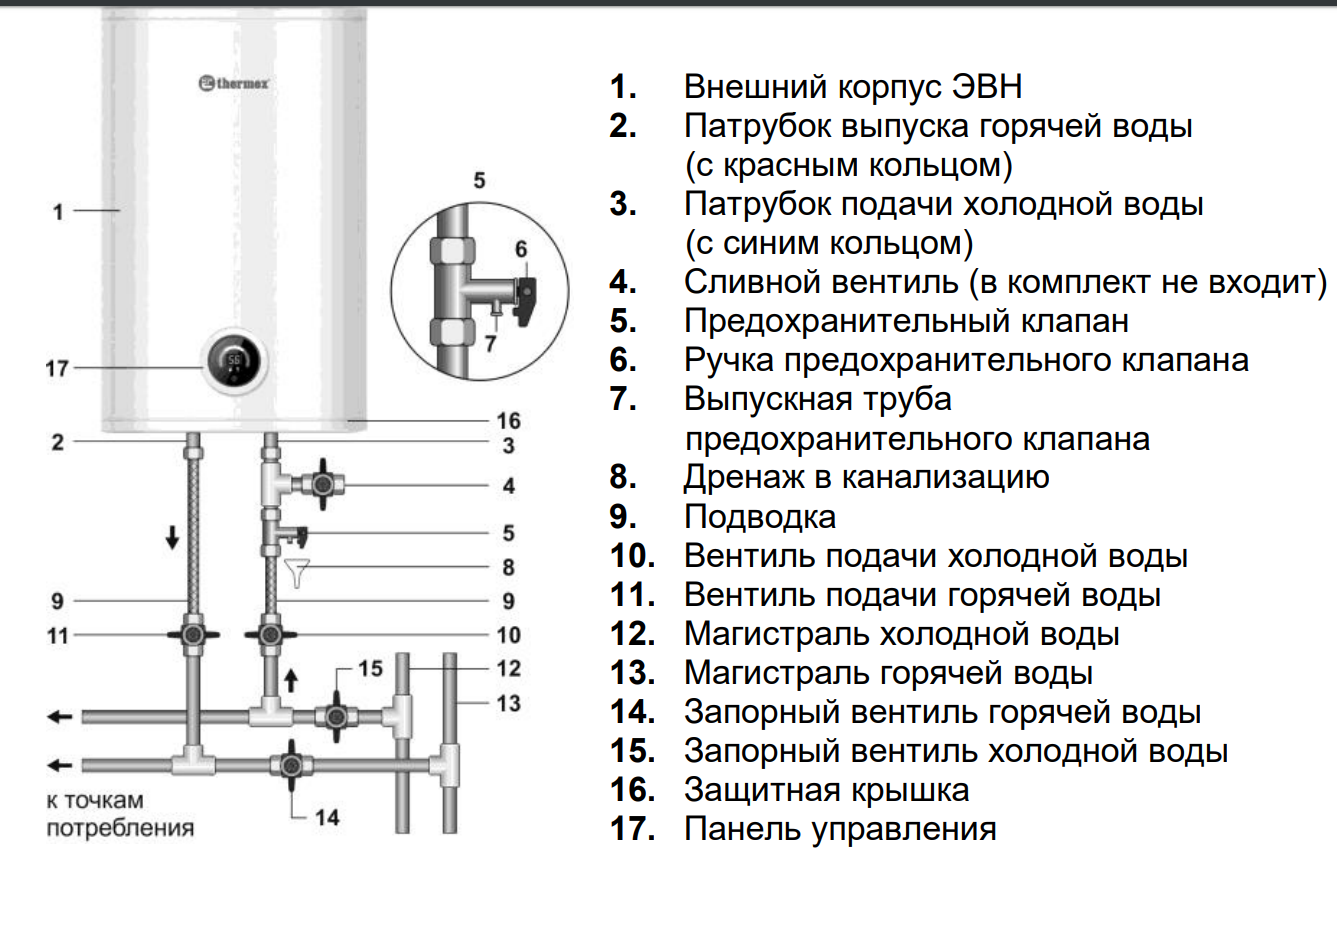 Подробная инструкция по применению водонагревателя термекс объёмом 15, 30, 50 и 80 литров